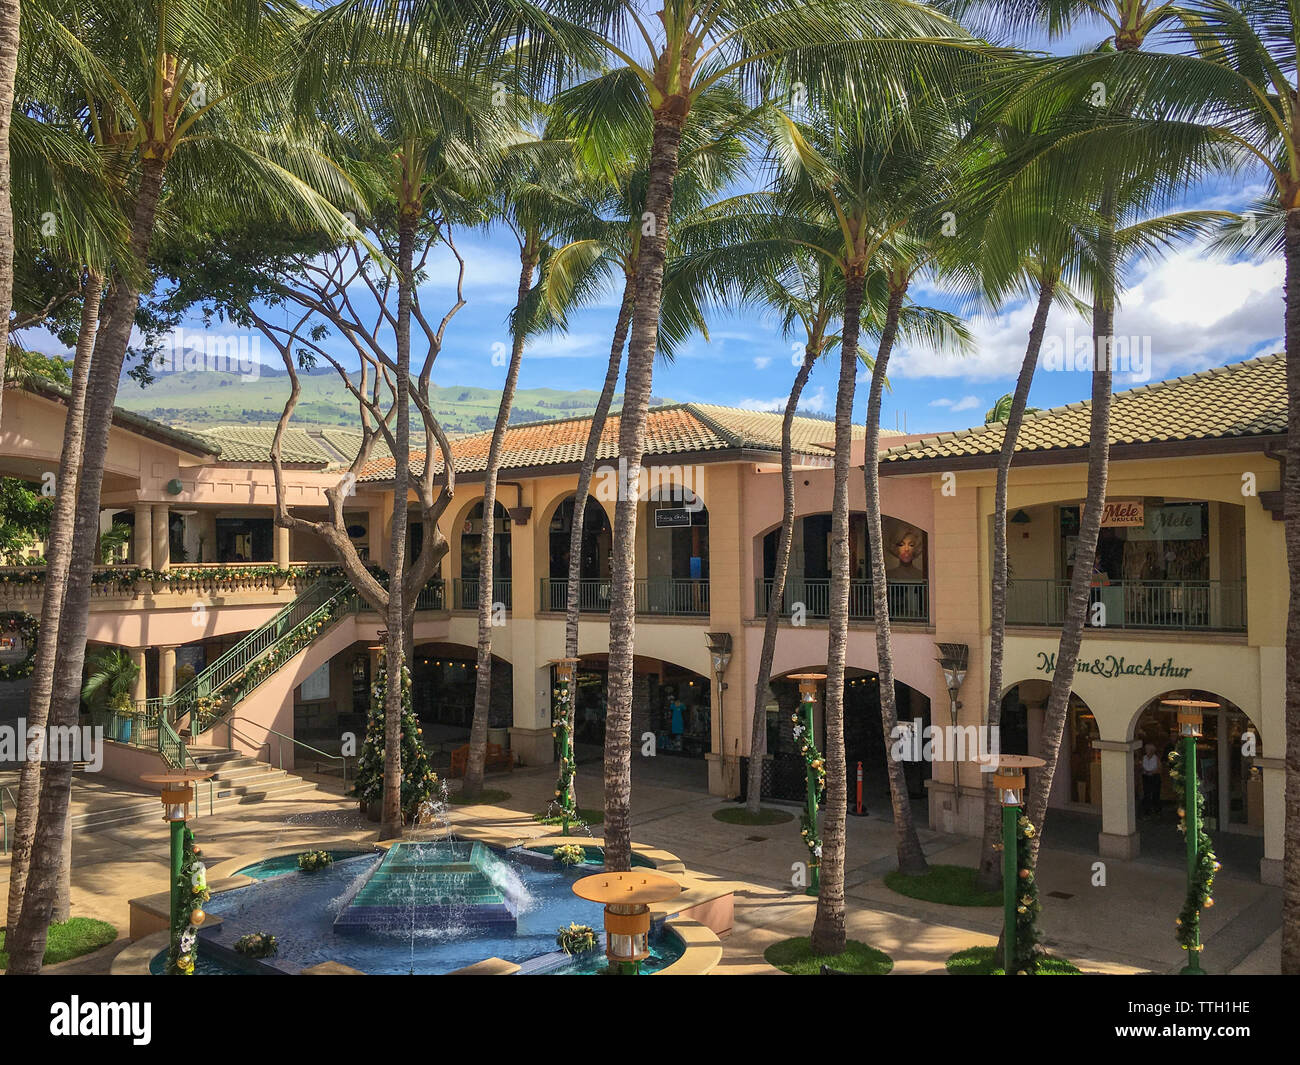 Wailea, HI, USA - November 7, 2016: Einkaufszentrum "Die Geschäfte in Wailea" der hawaiianischen Insel Maui, USA Stockfoto